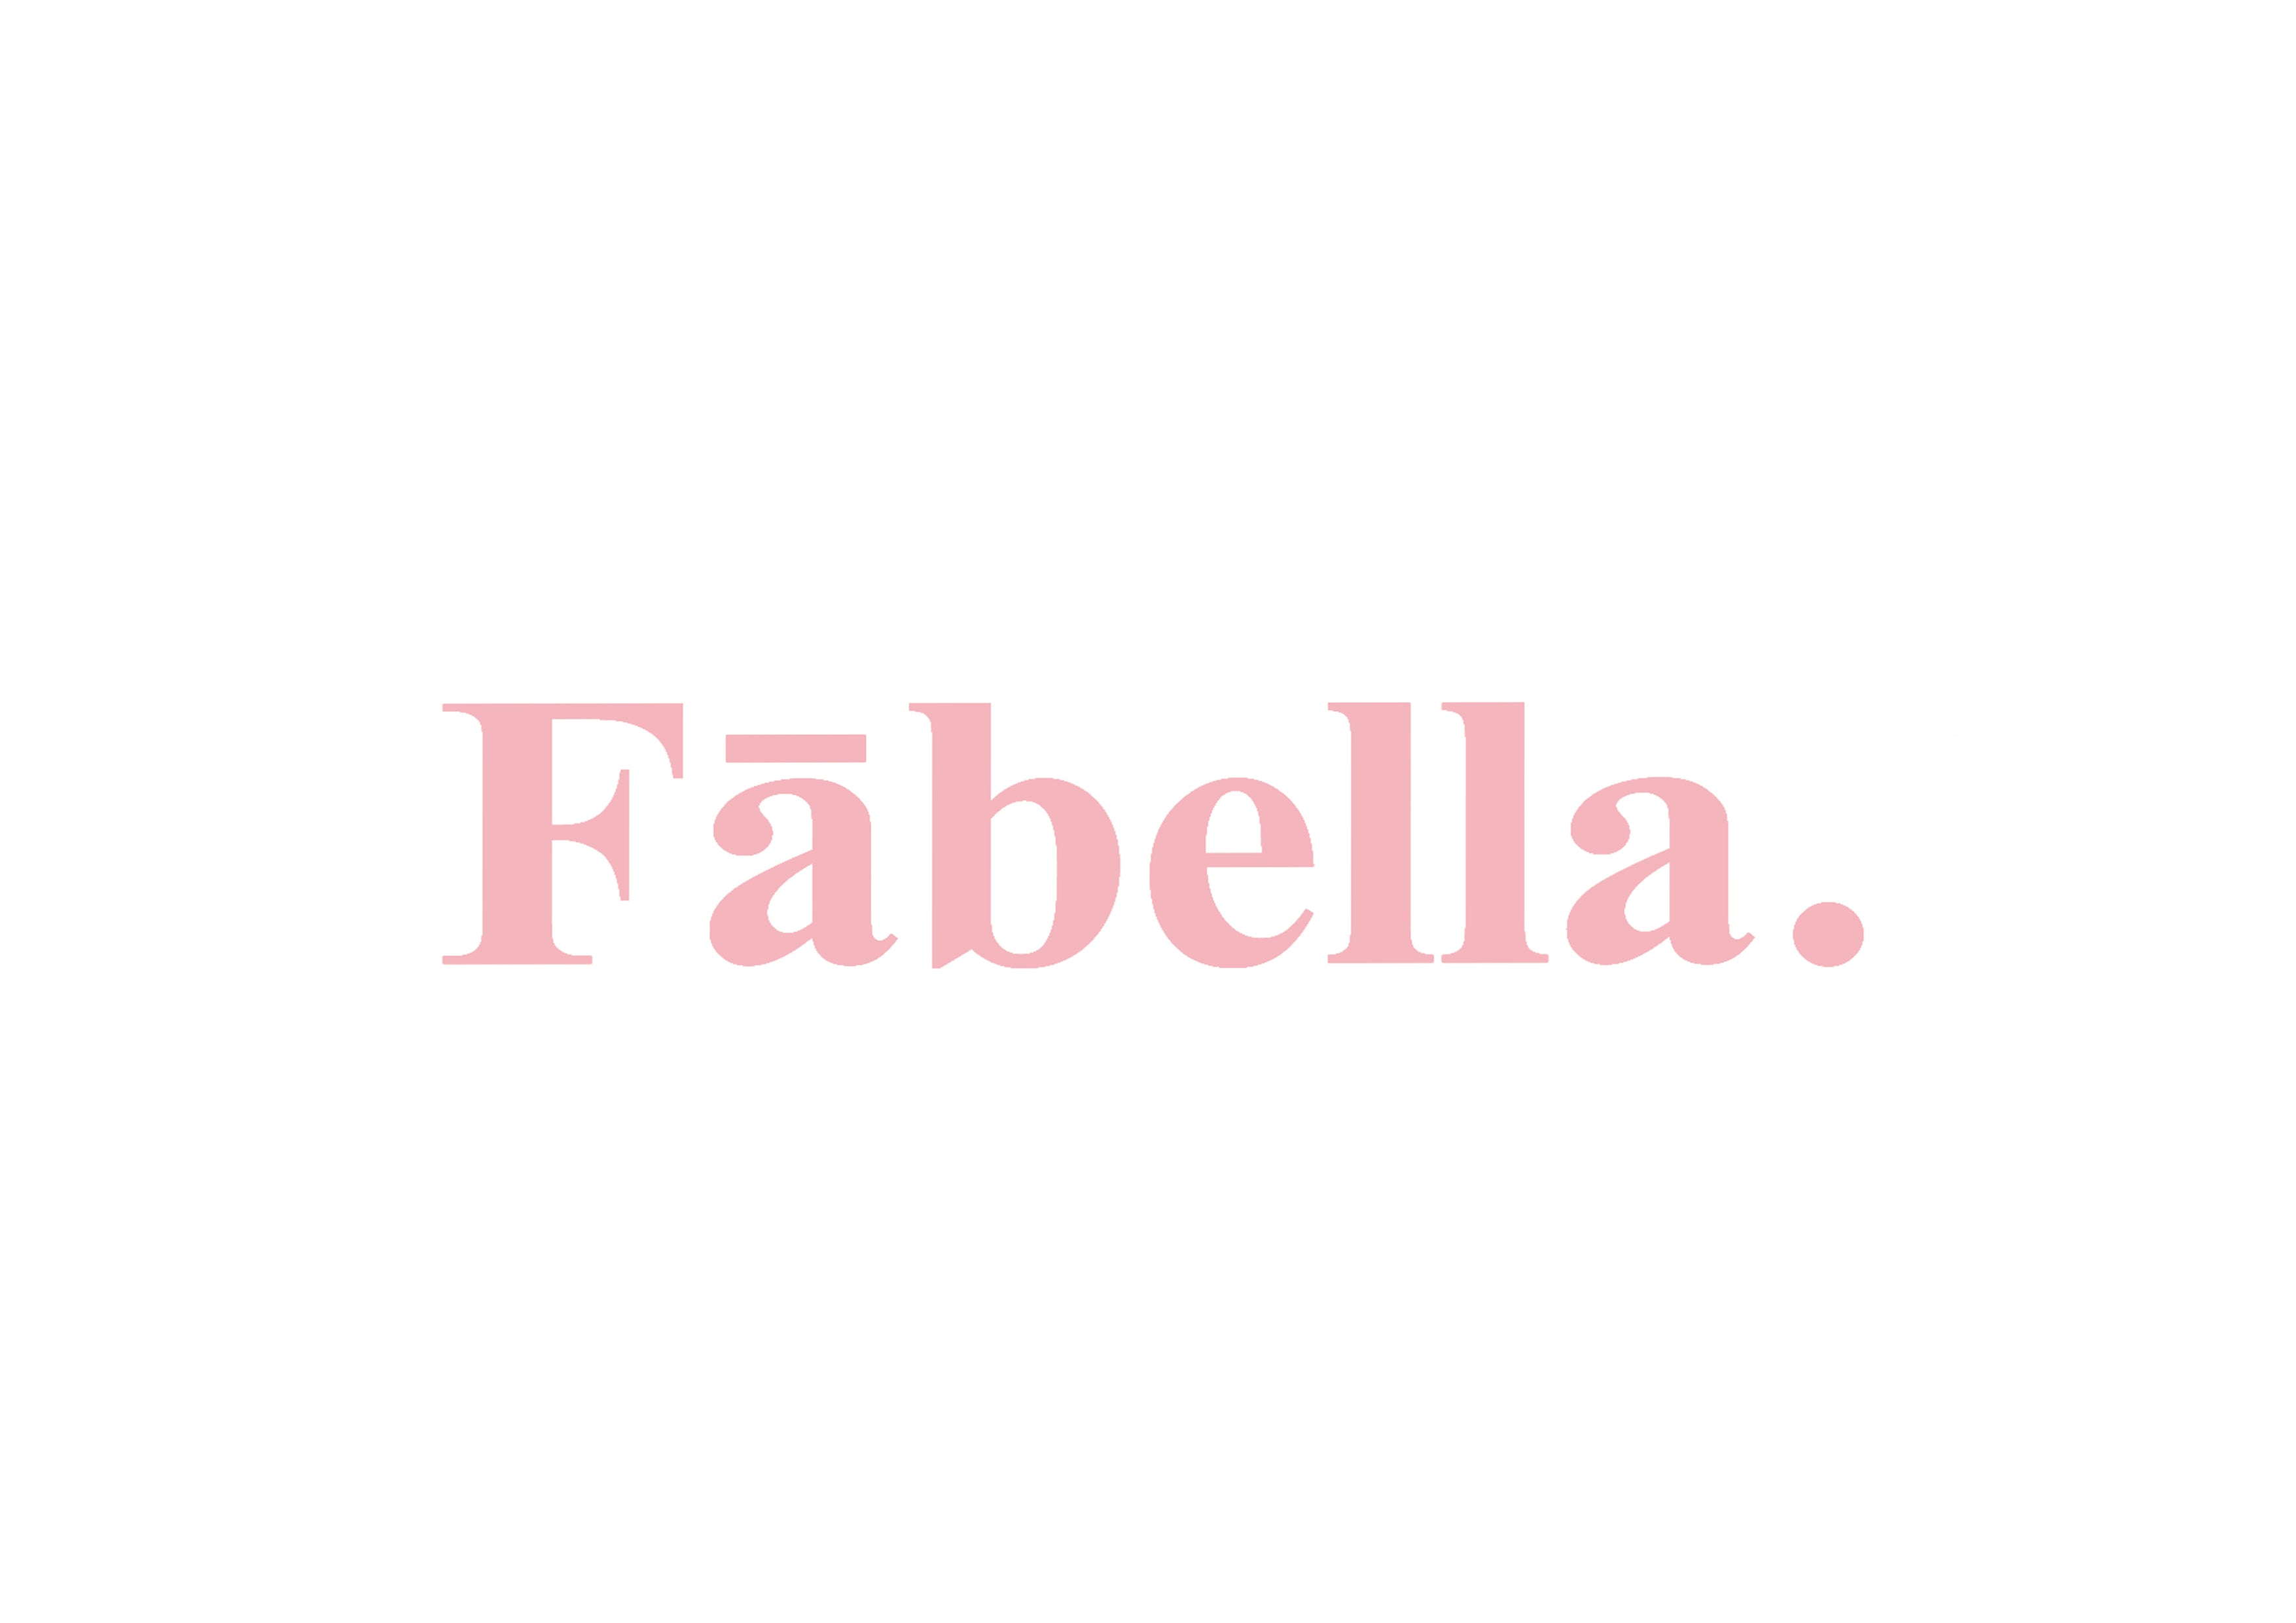 Fābella